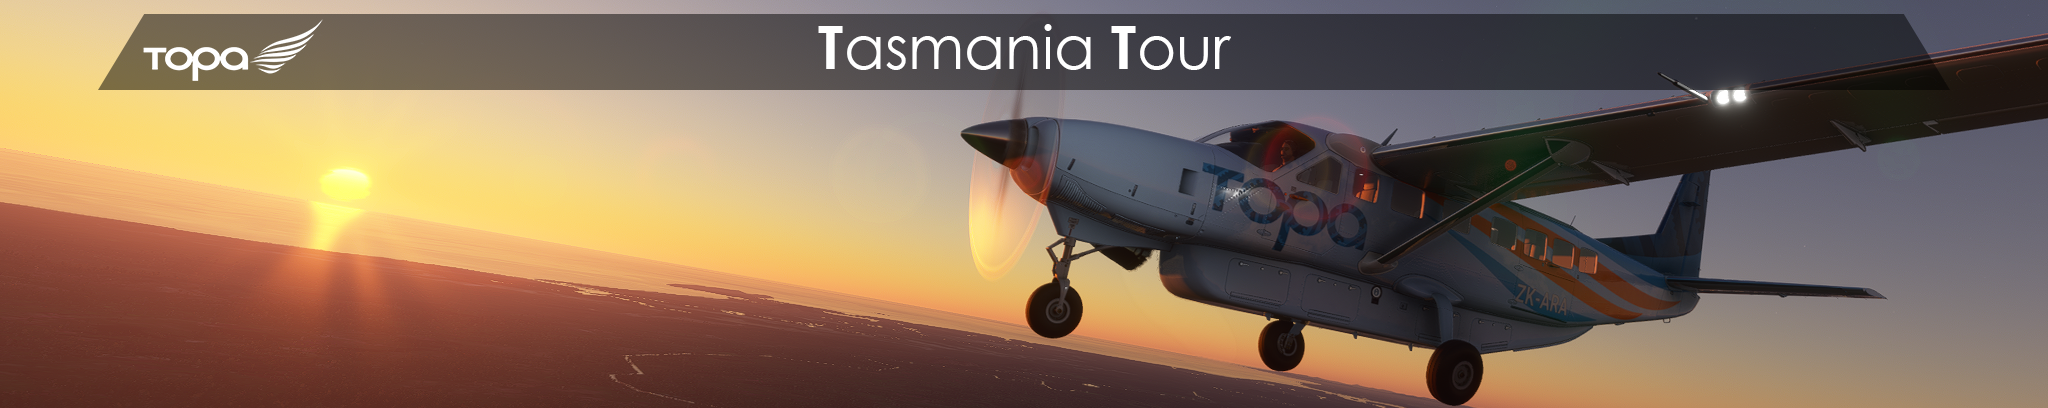 Tasmania Tour